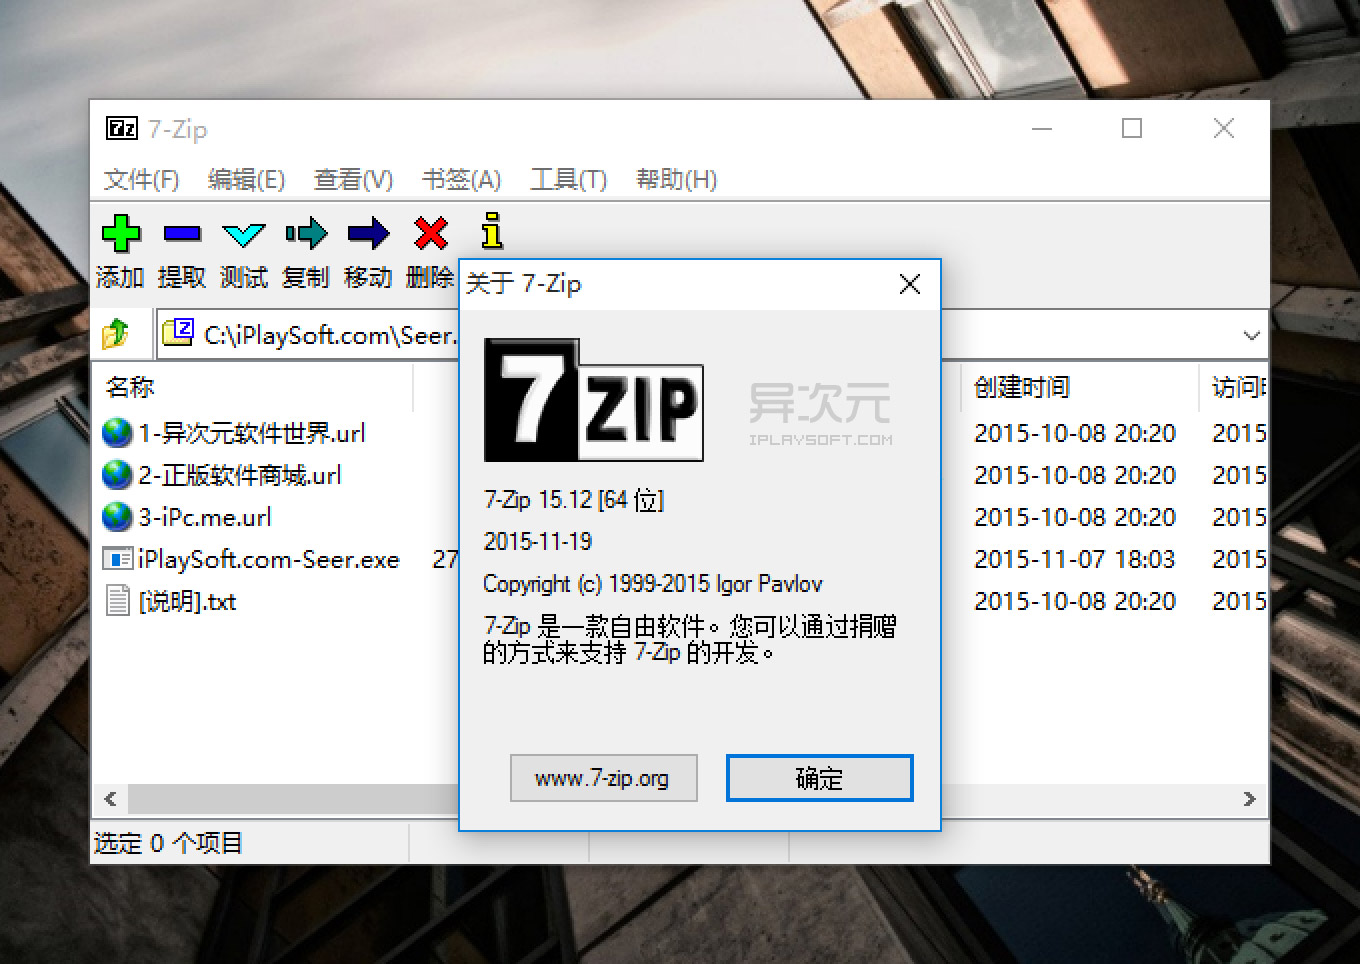 7-Zip - 免费而且开源的压缩软件[Windows] - 软件下载 - 画夹插件网